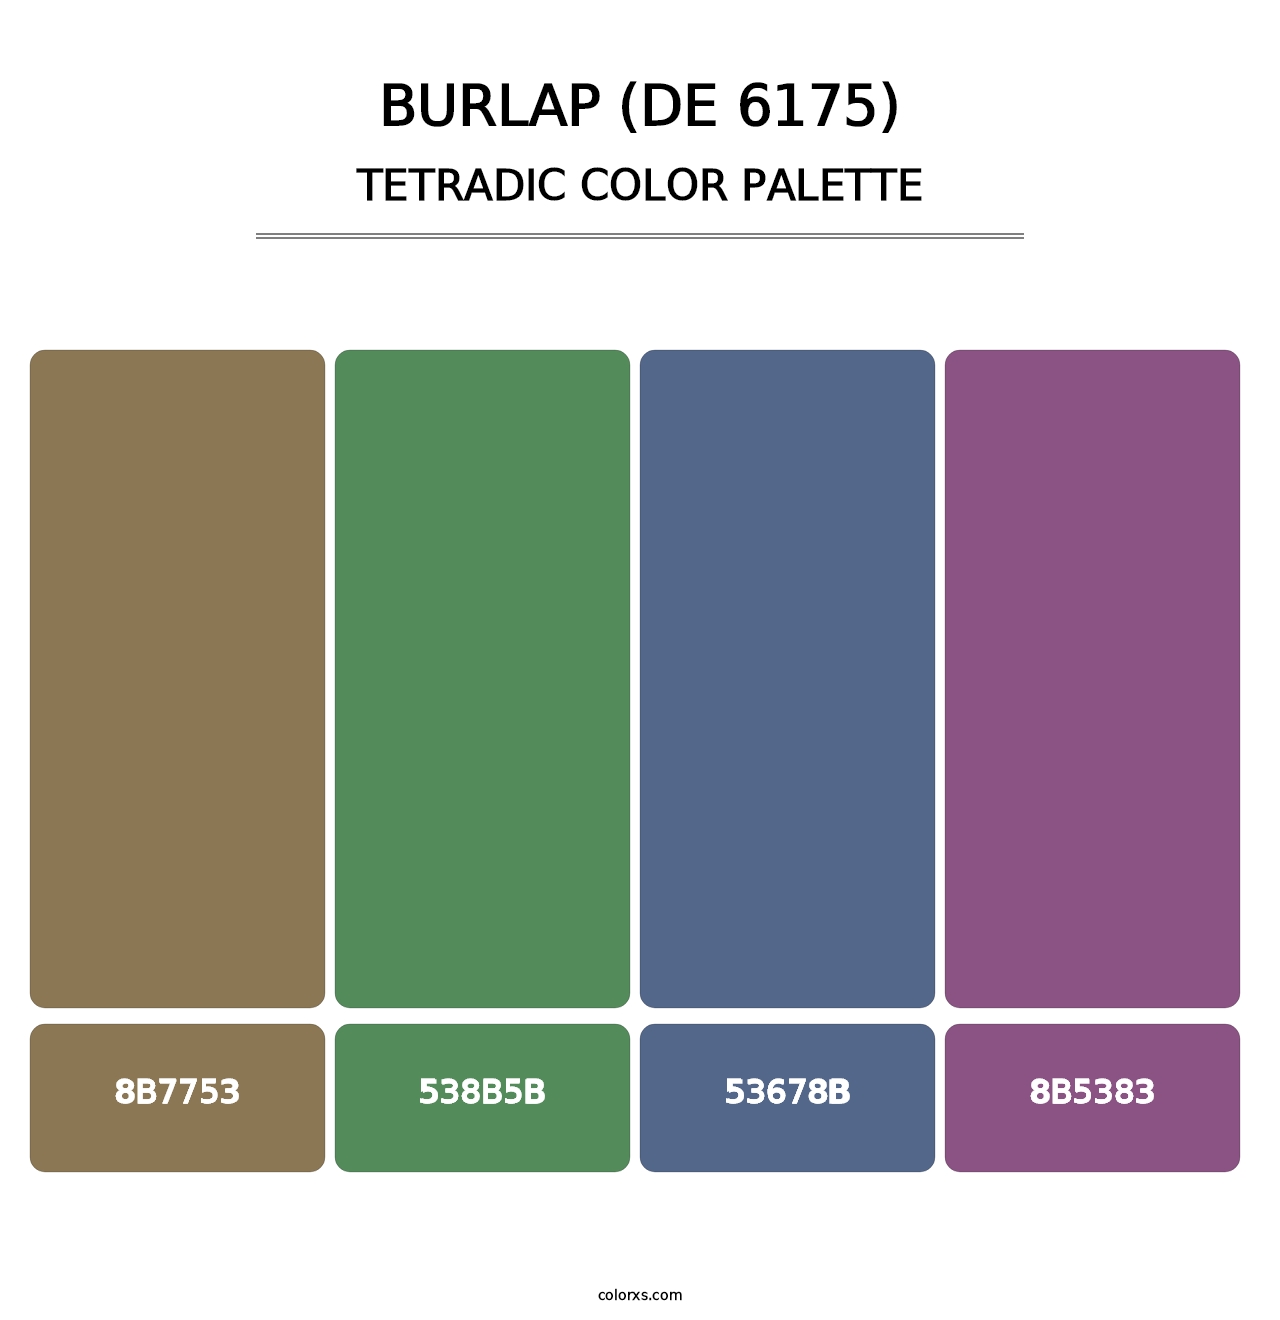 Burlap (DE 6175) - Tetradic Color Palette